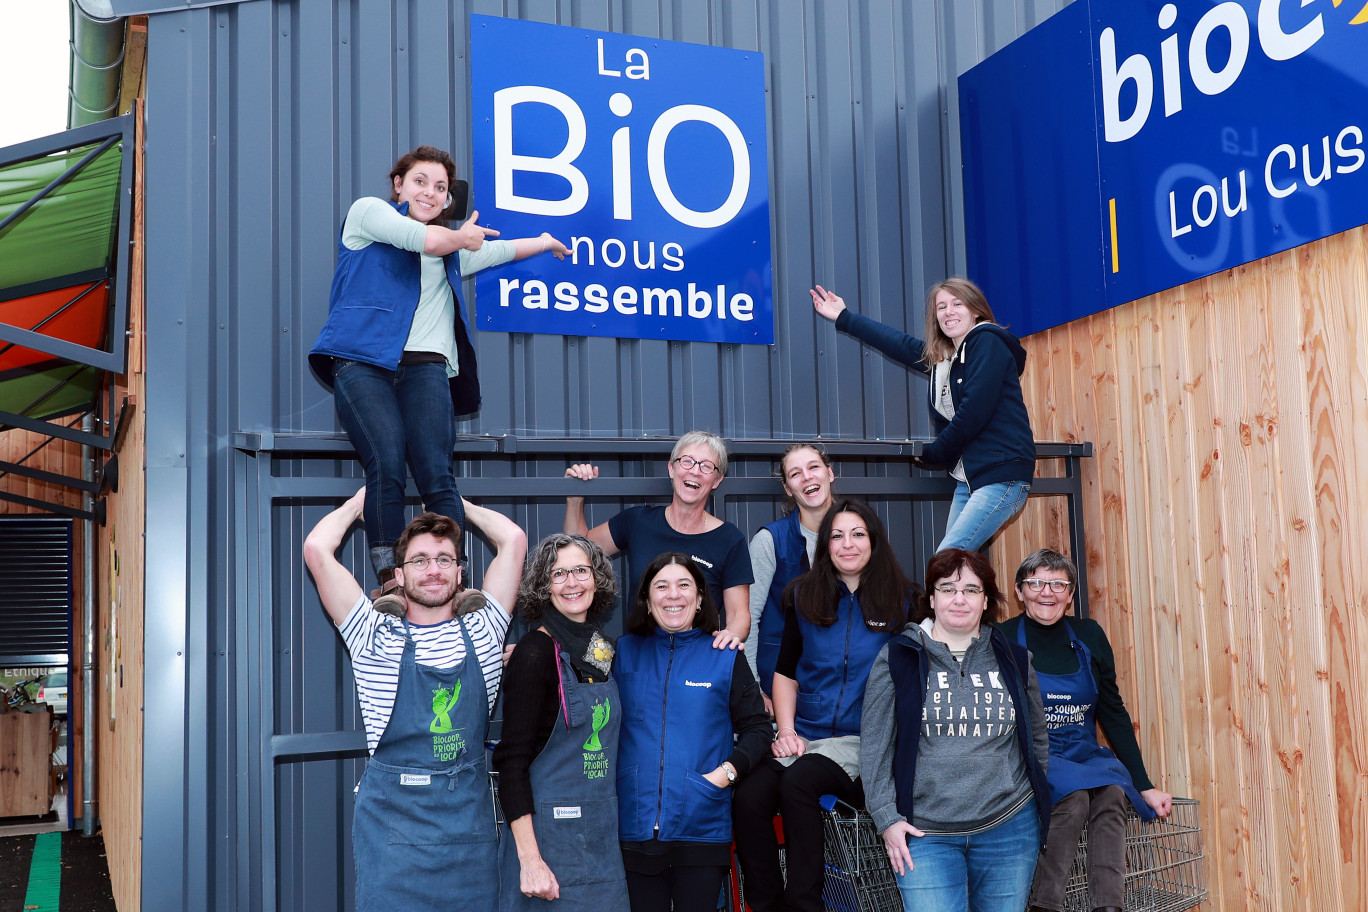 Le réseau Biocoop mobilisé pour sa Collecte Bio Solidaire, début juin. (c) Nathalie Mahieu/Biocoop.